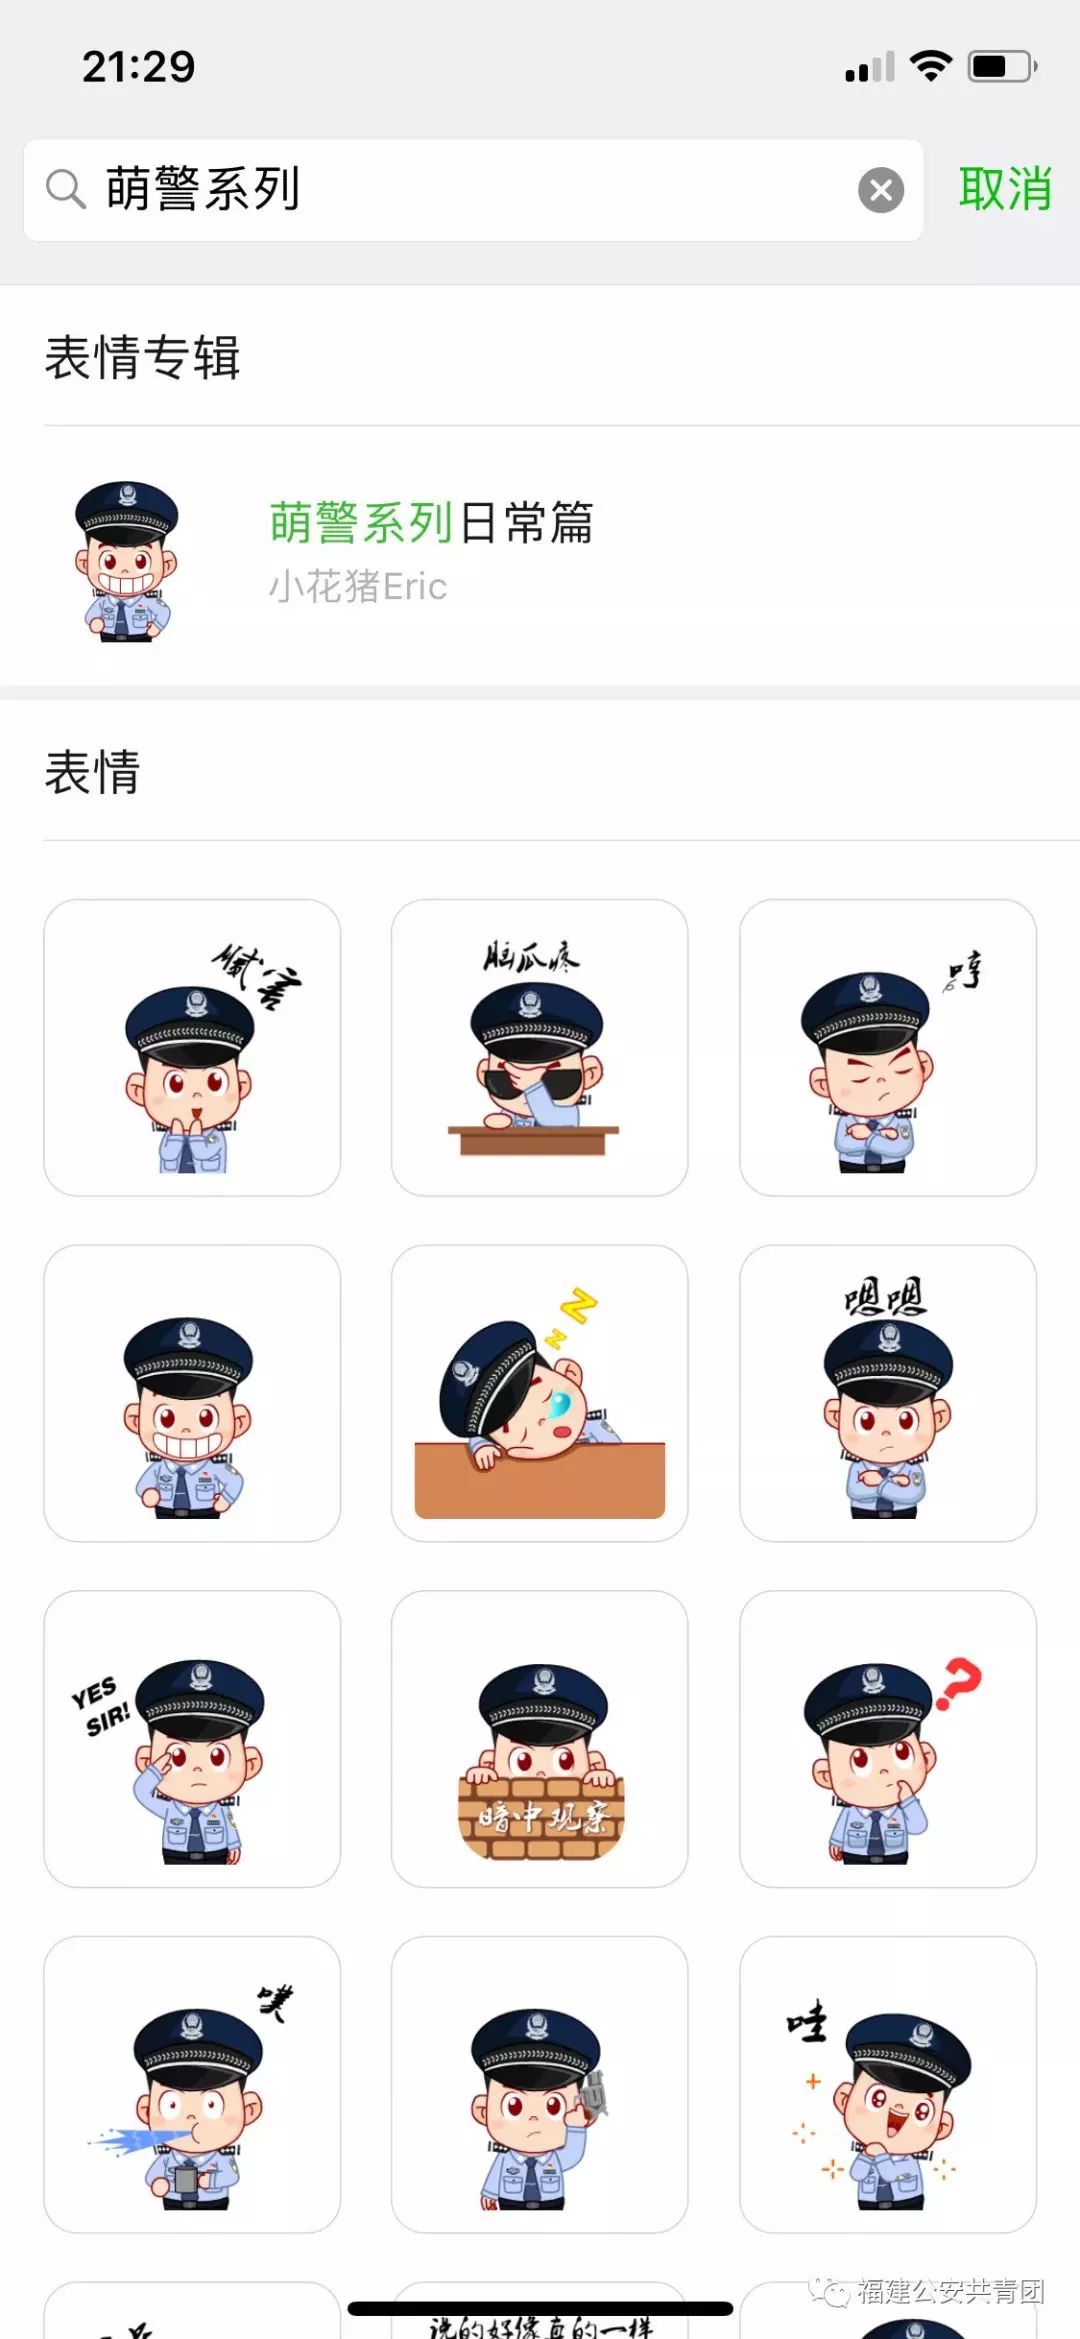 萌警来了福建警方推出全省首套警察卡通微信表情包